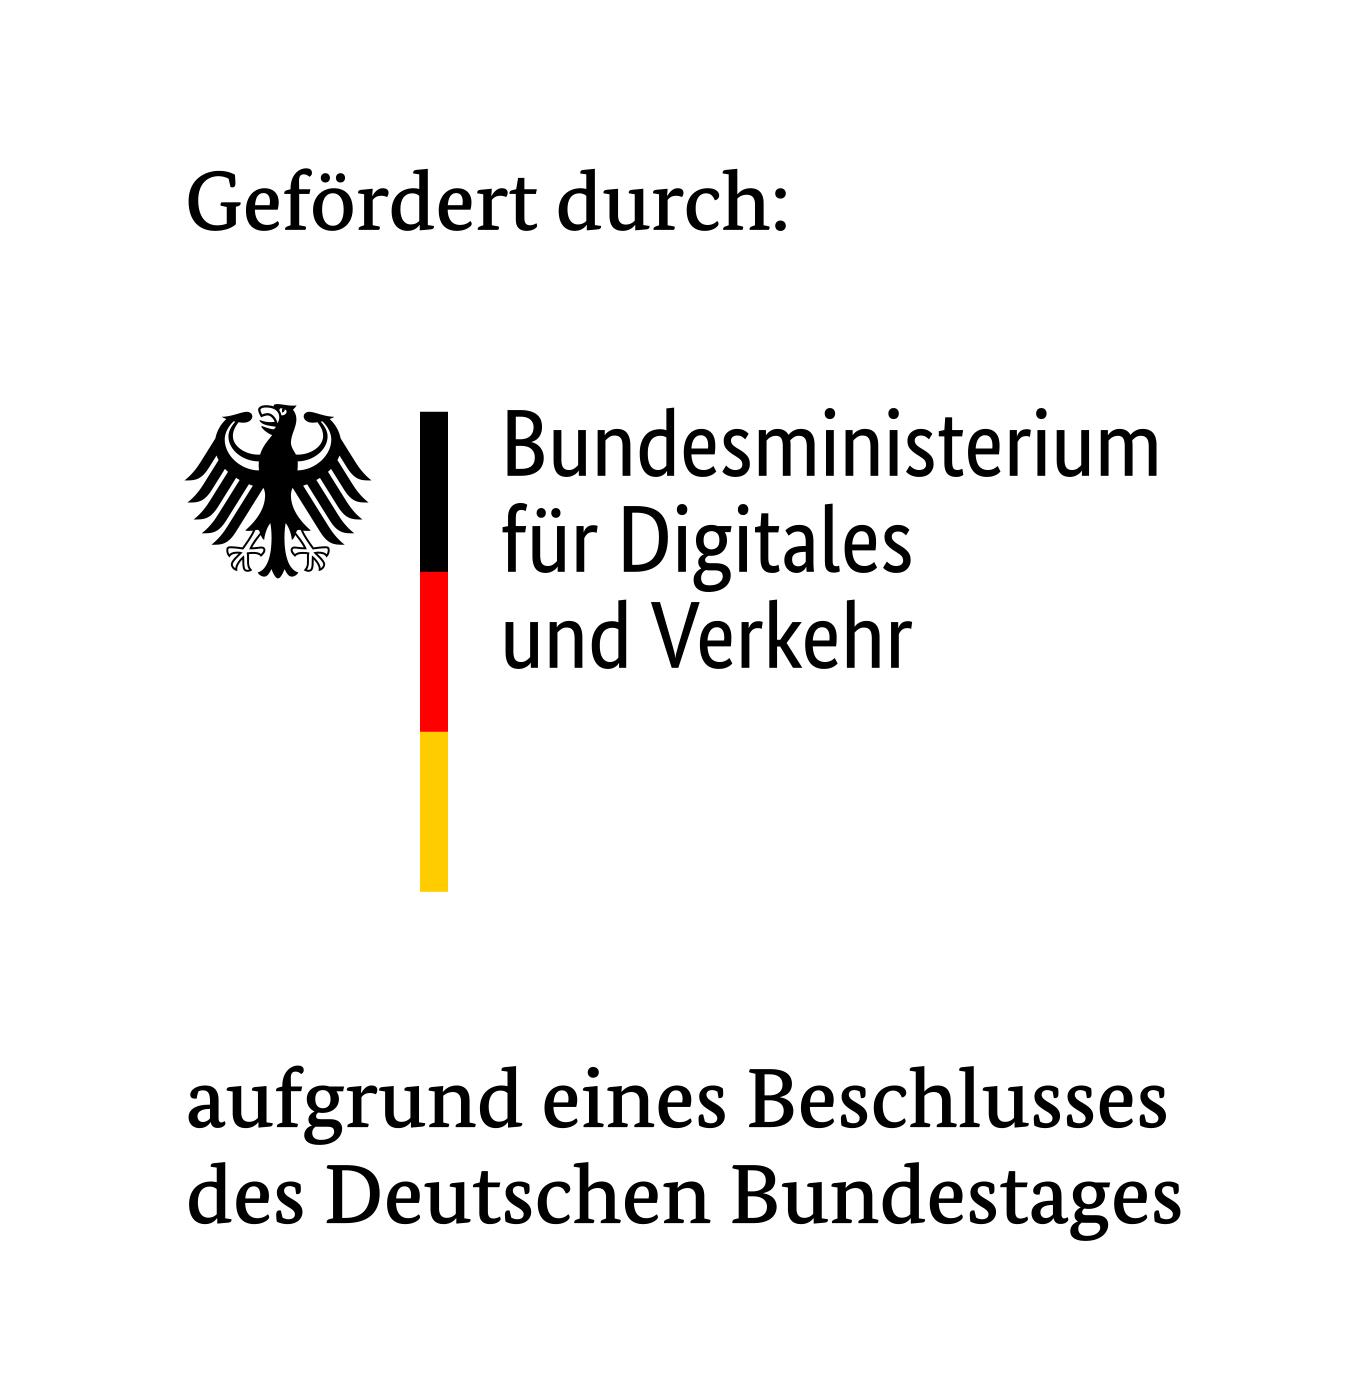 Gefördert durch: Die Bundesregierung aufgrund eines Beschlusses des Deutschen Bundestages